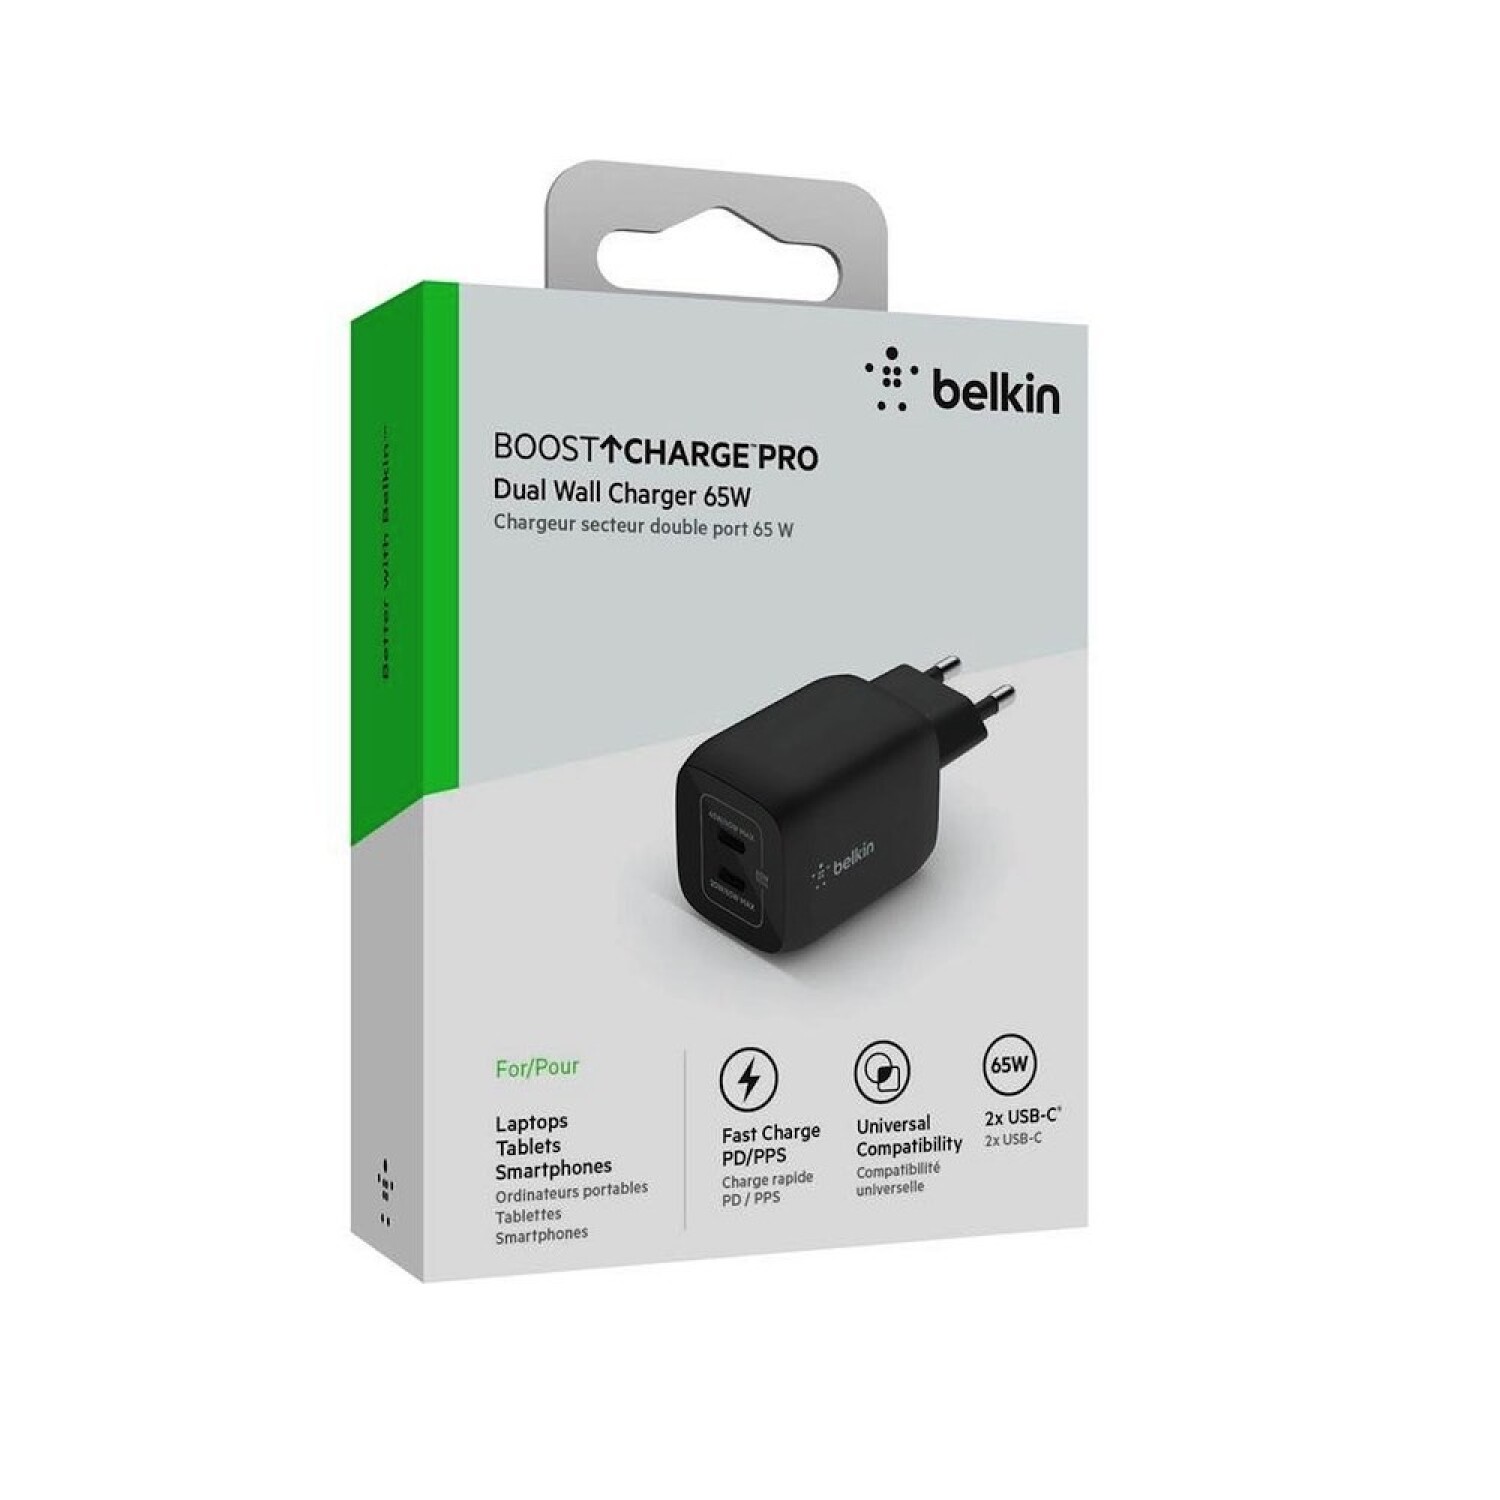 Belkin Chargeur secteur USB-C GAN 65W